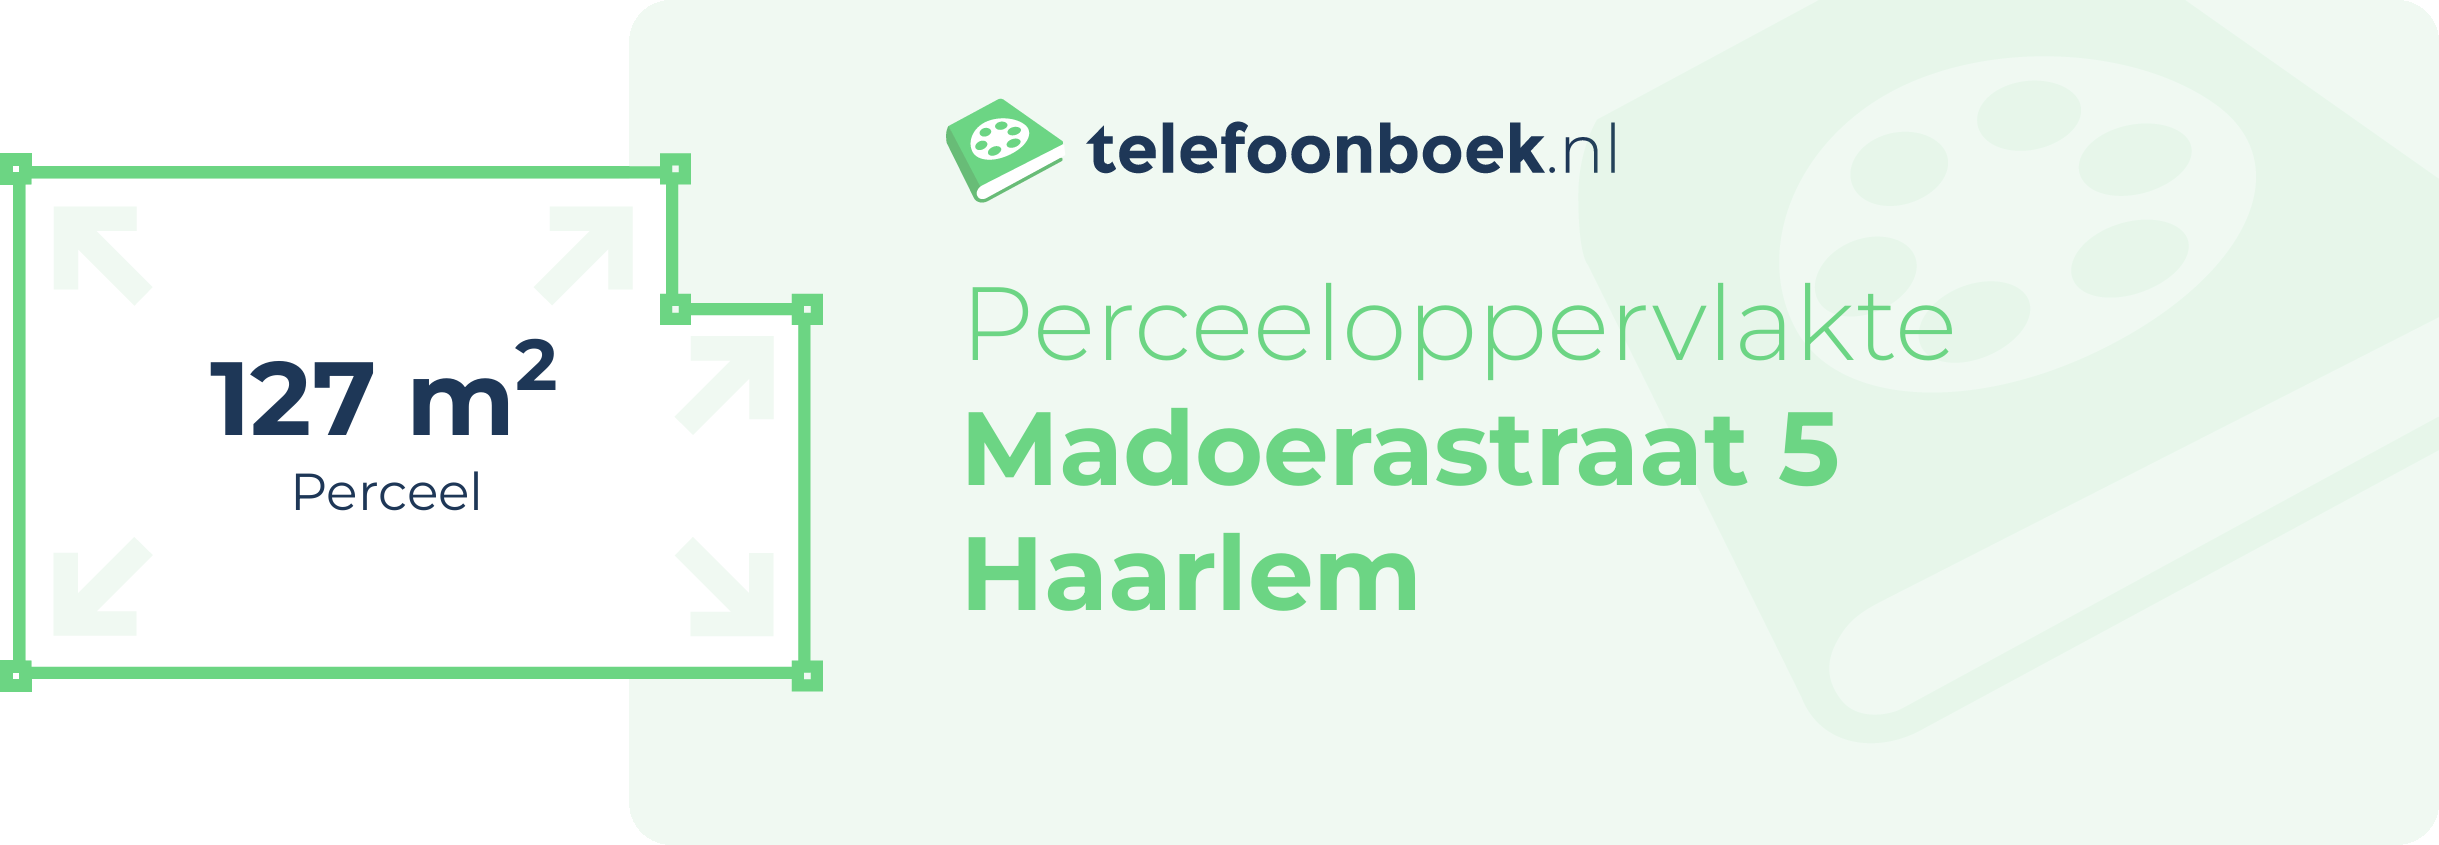 Perceeloppervlakte Madoerastraat 5 Haarlem